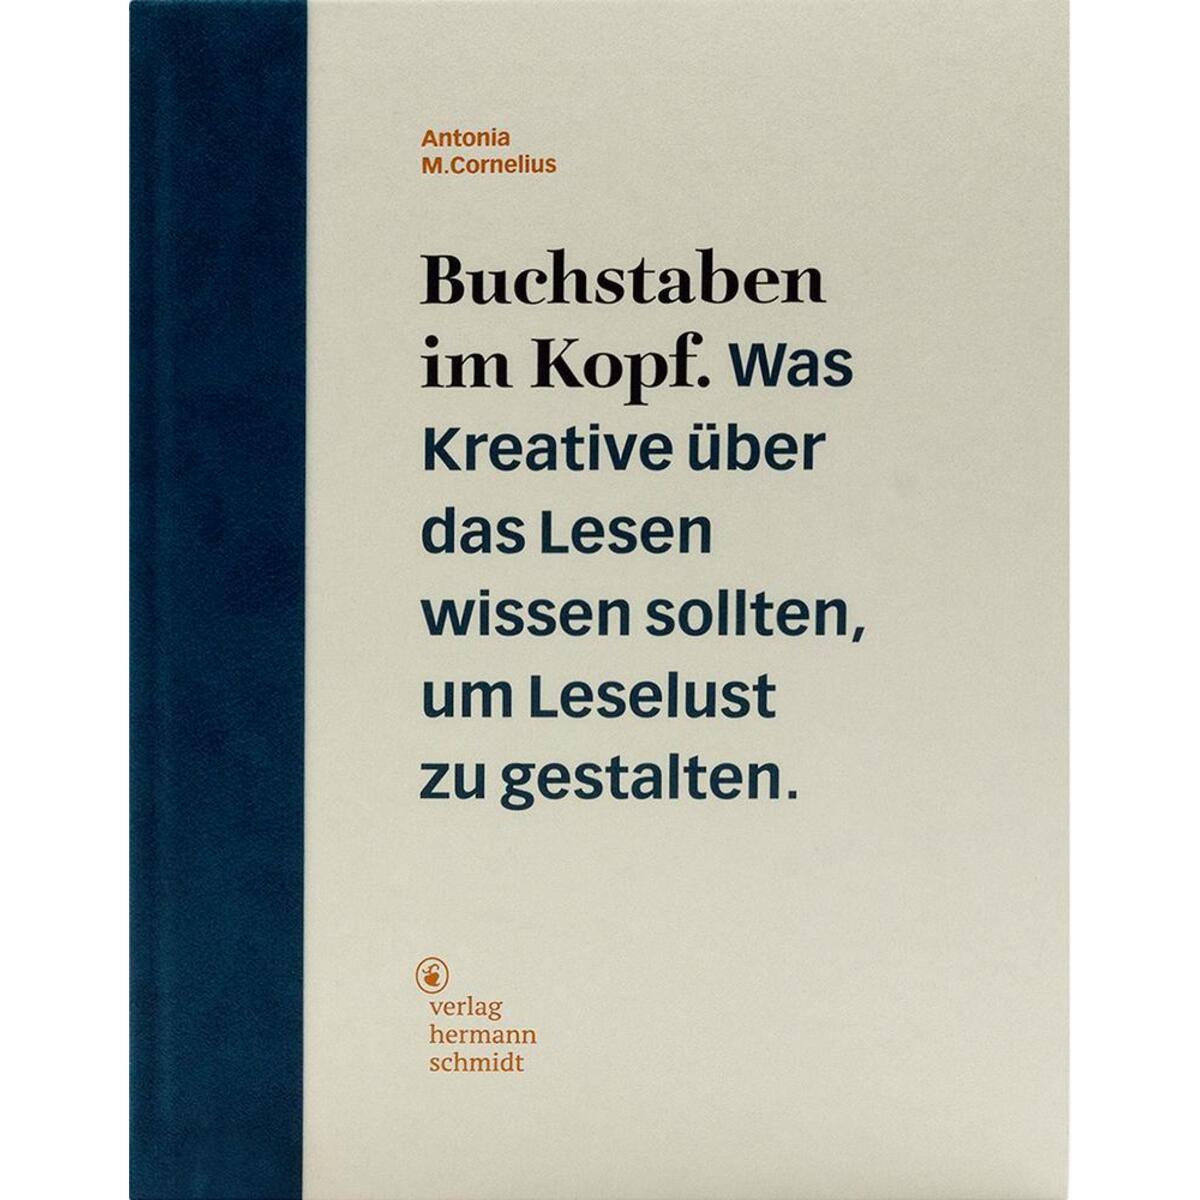 Buchstaben im Kopf von Schmidt Hermann Verlag